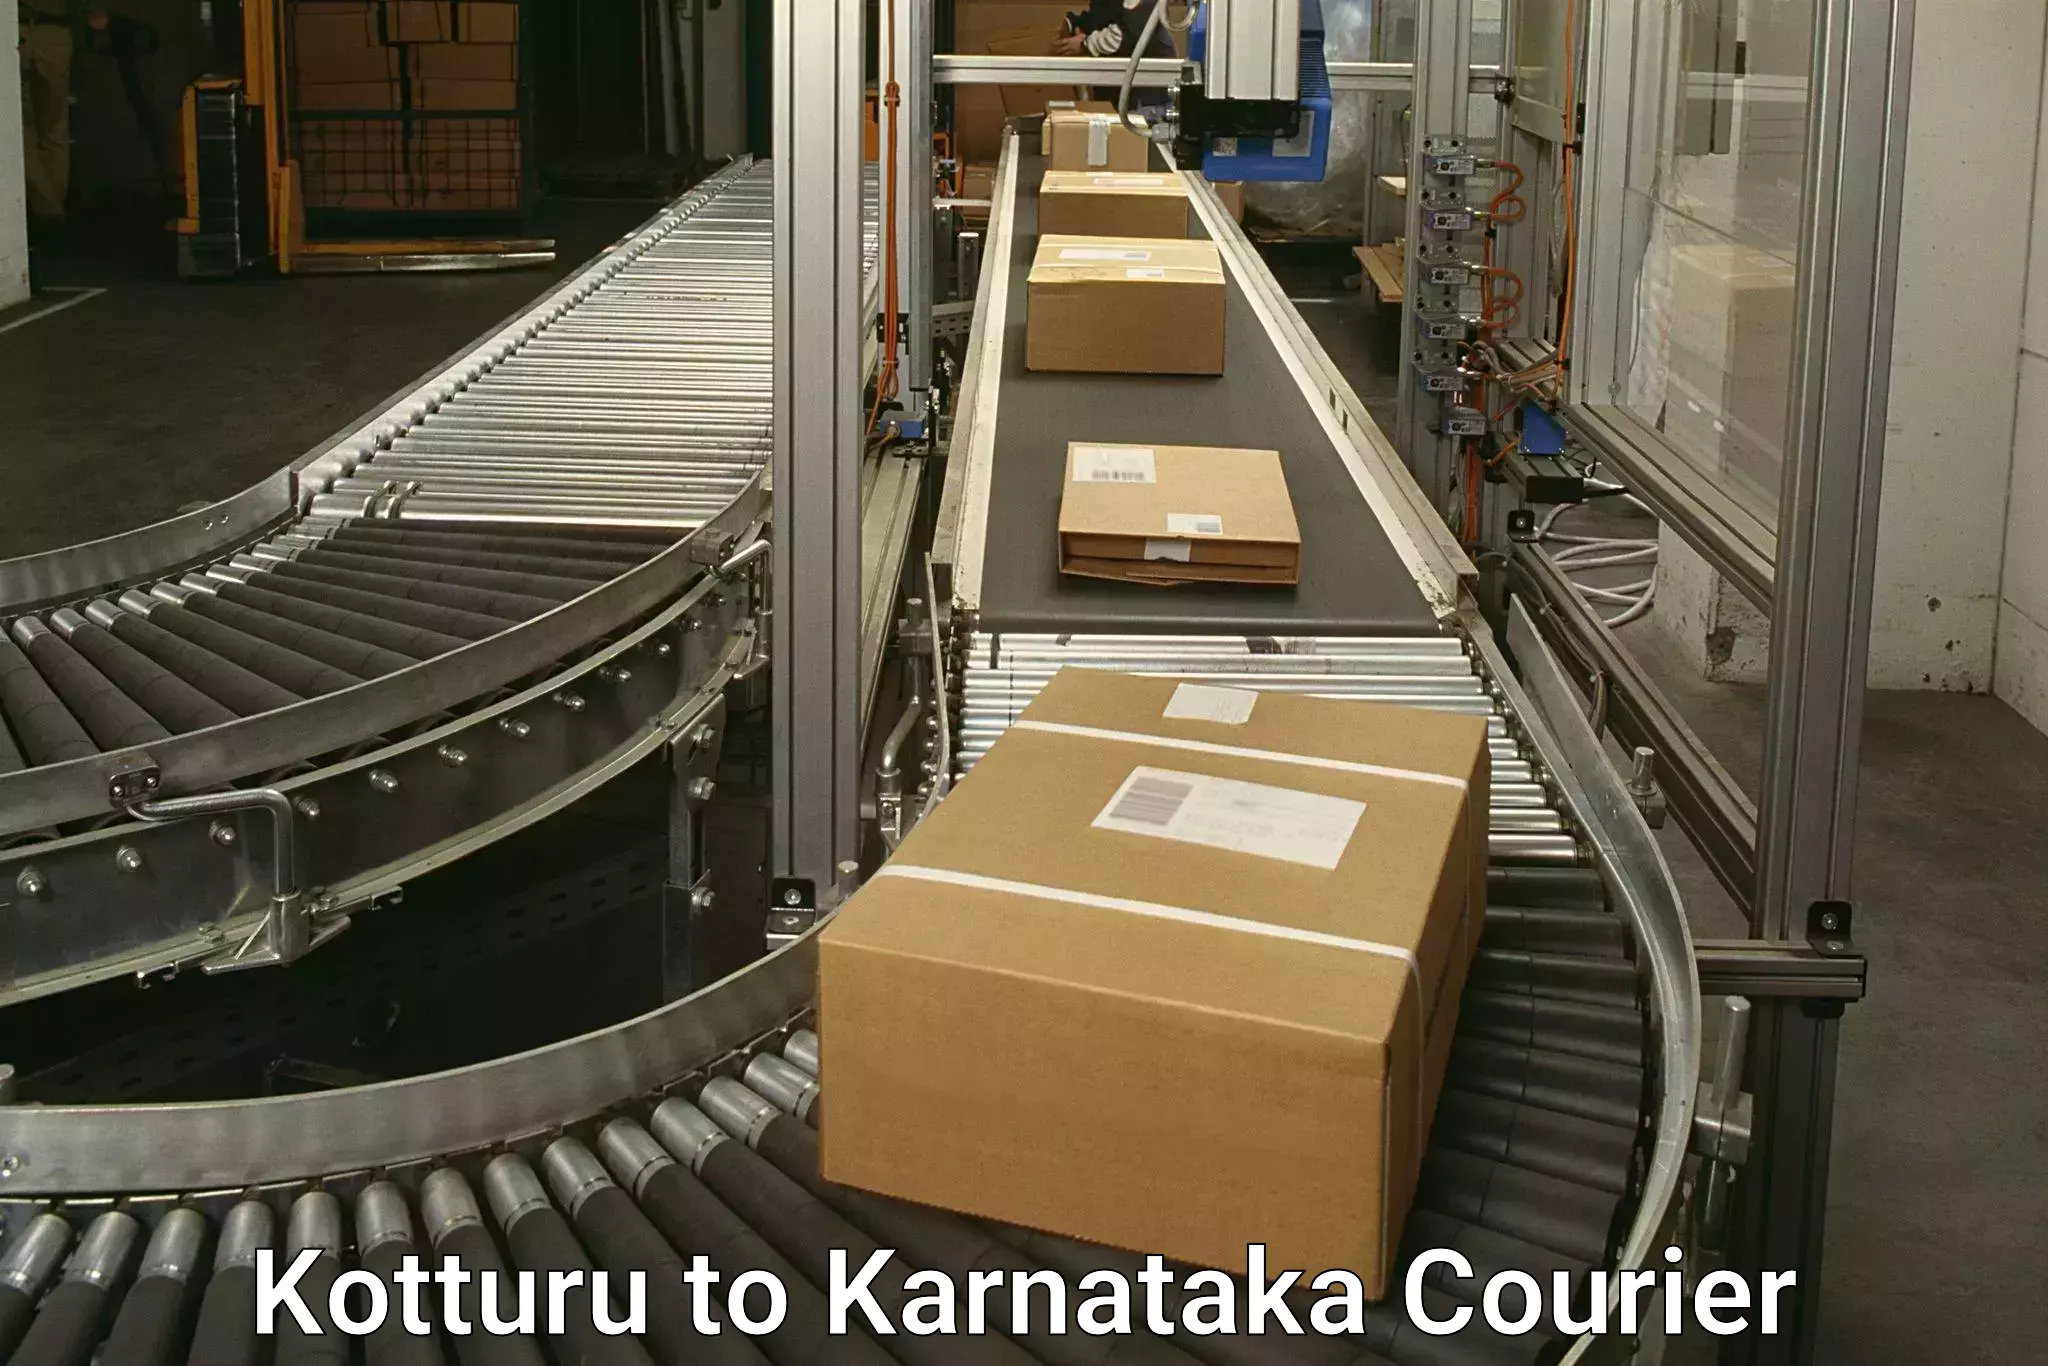 Air courier services Kotturu to Karnataka